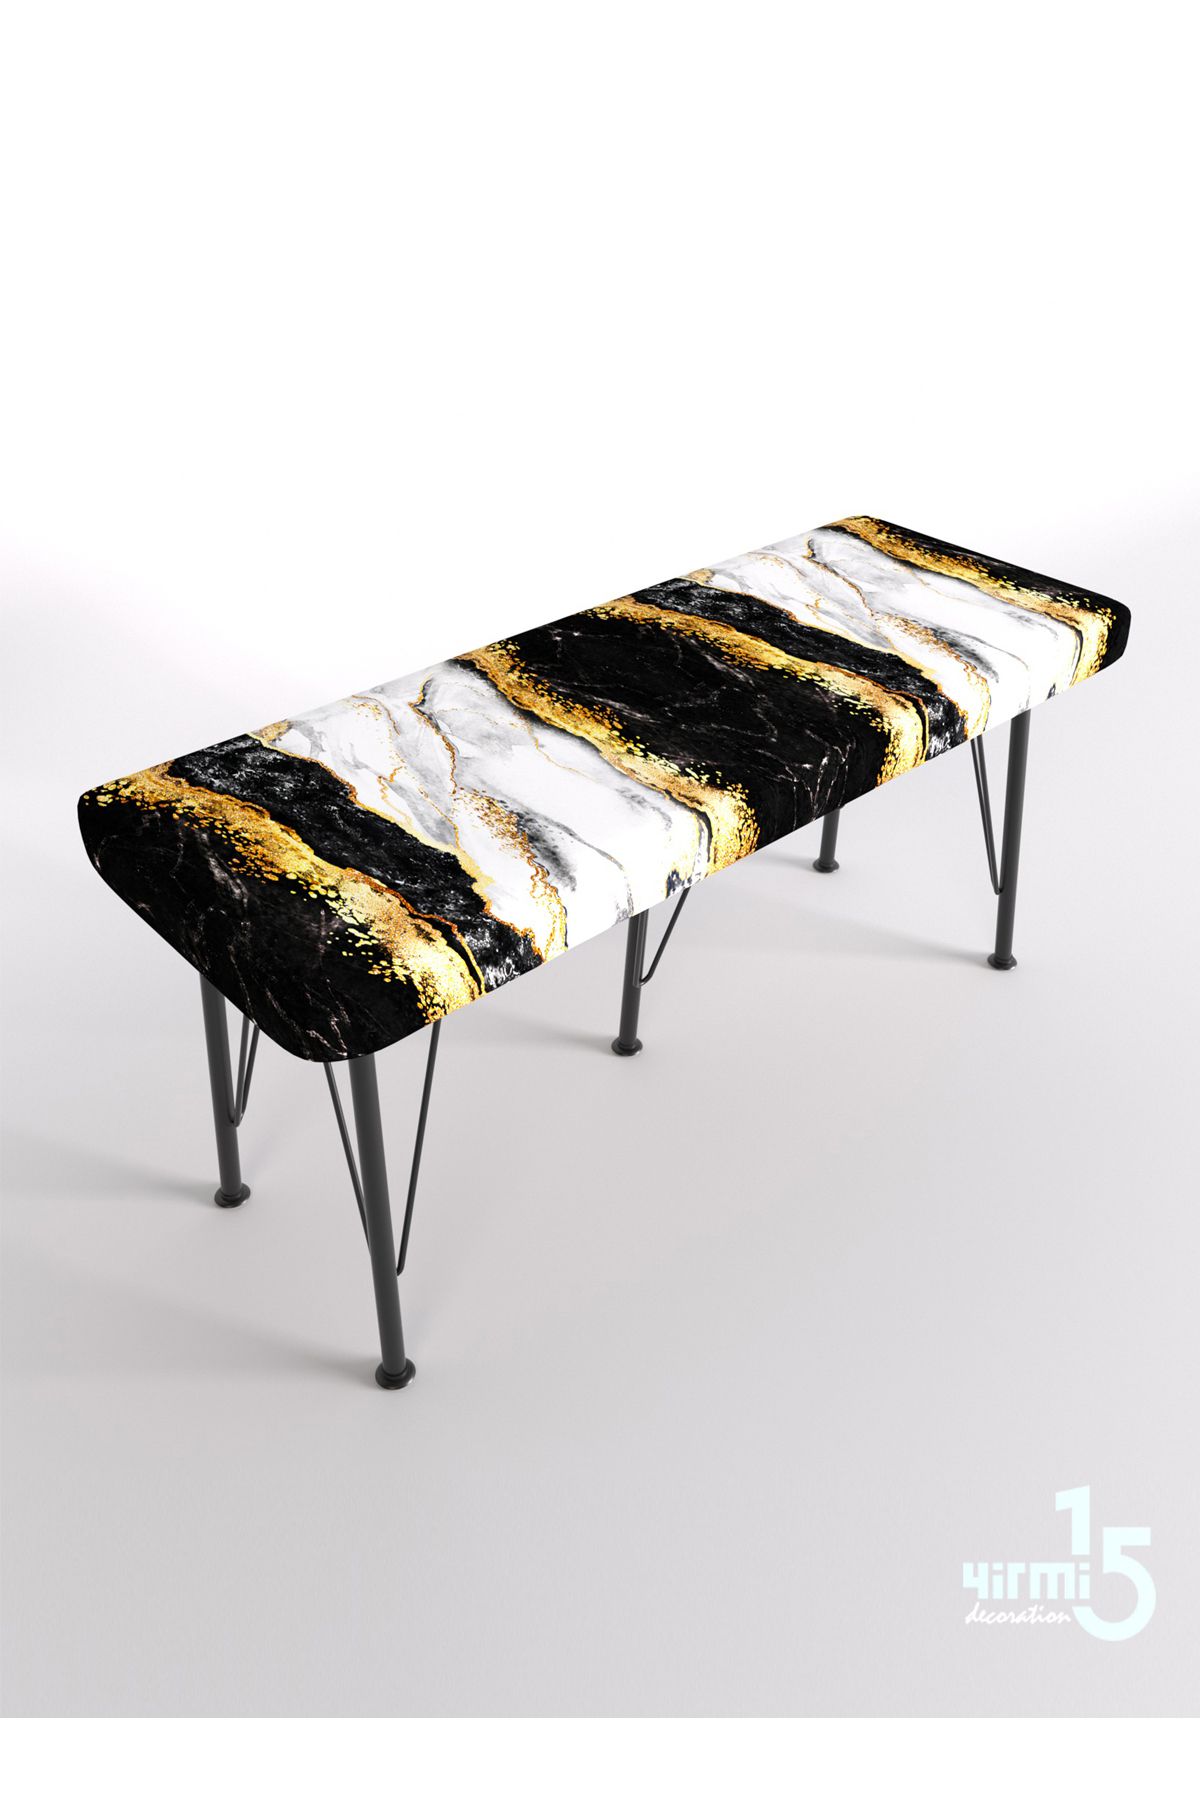 Yirmi15 Metal Ayaklı Babyface Puf & Bench - Gold Black Bench Baskılı Bench Mermer desen bench